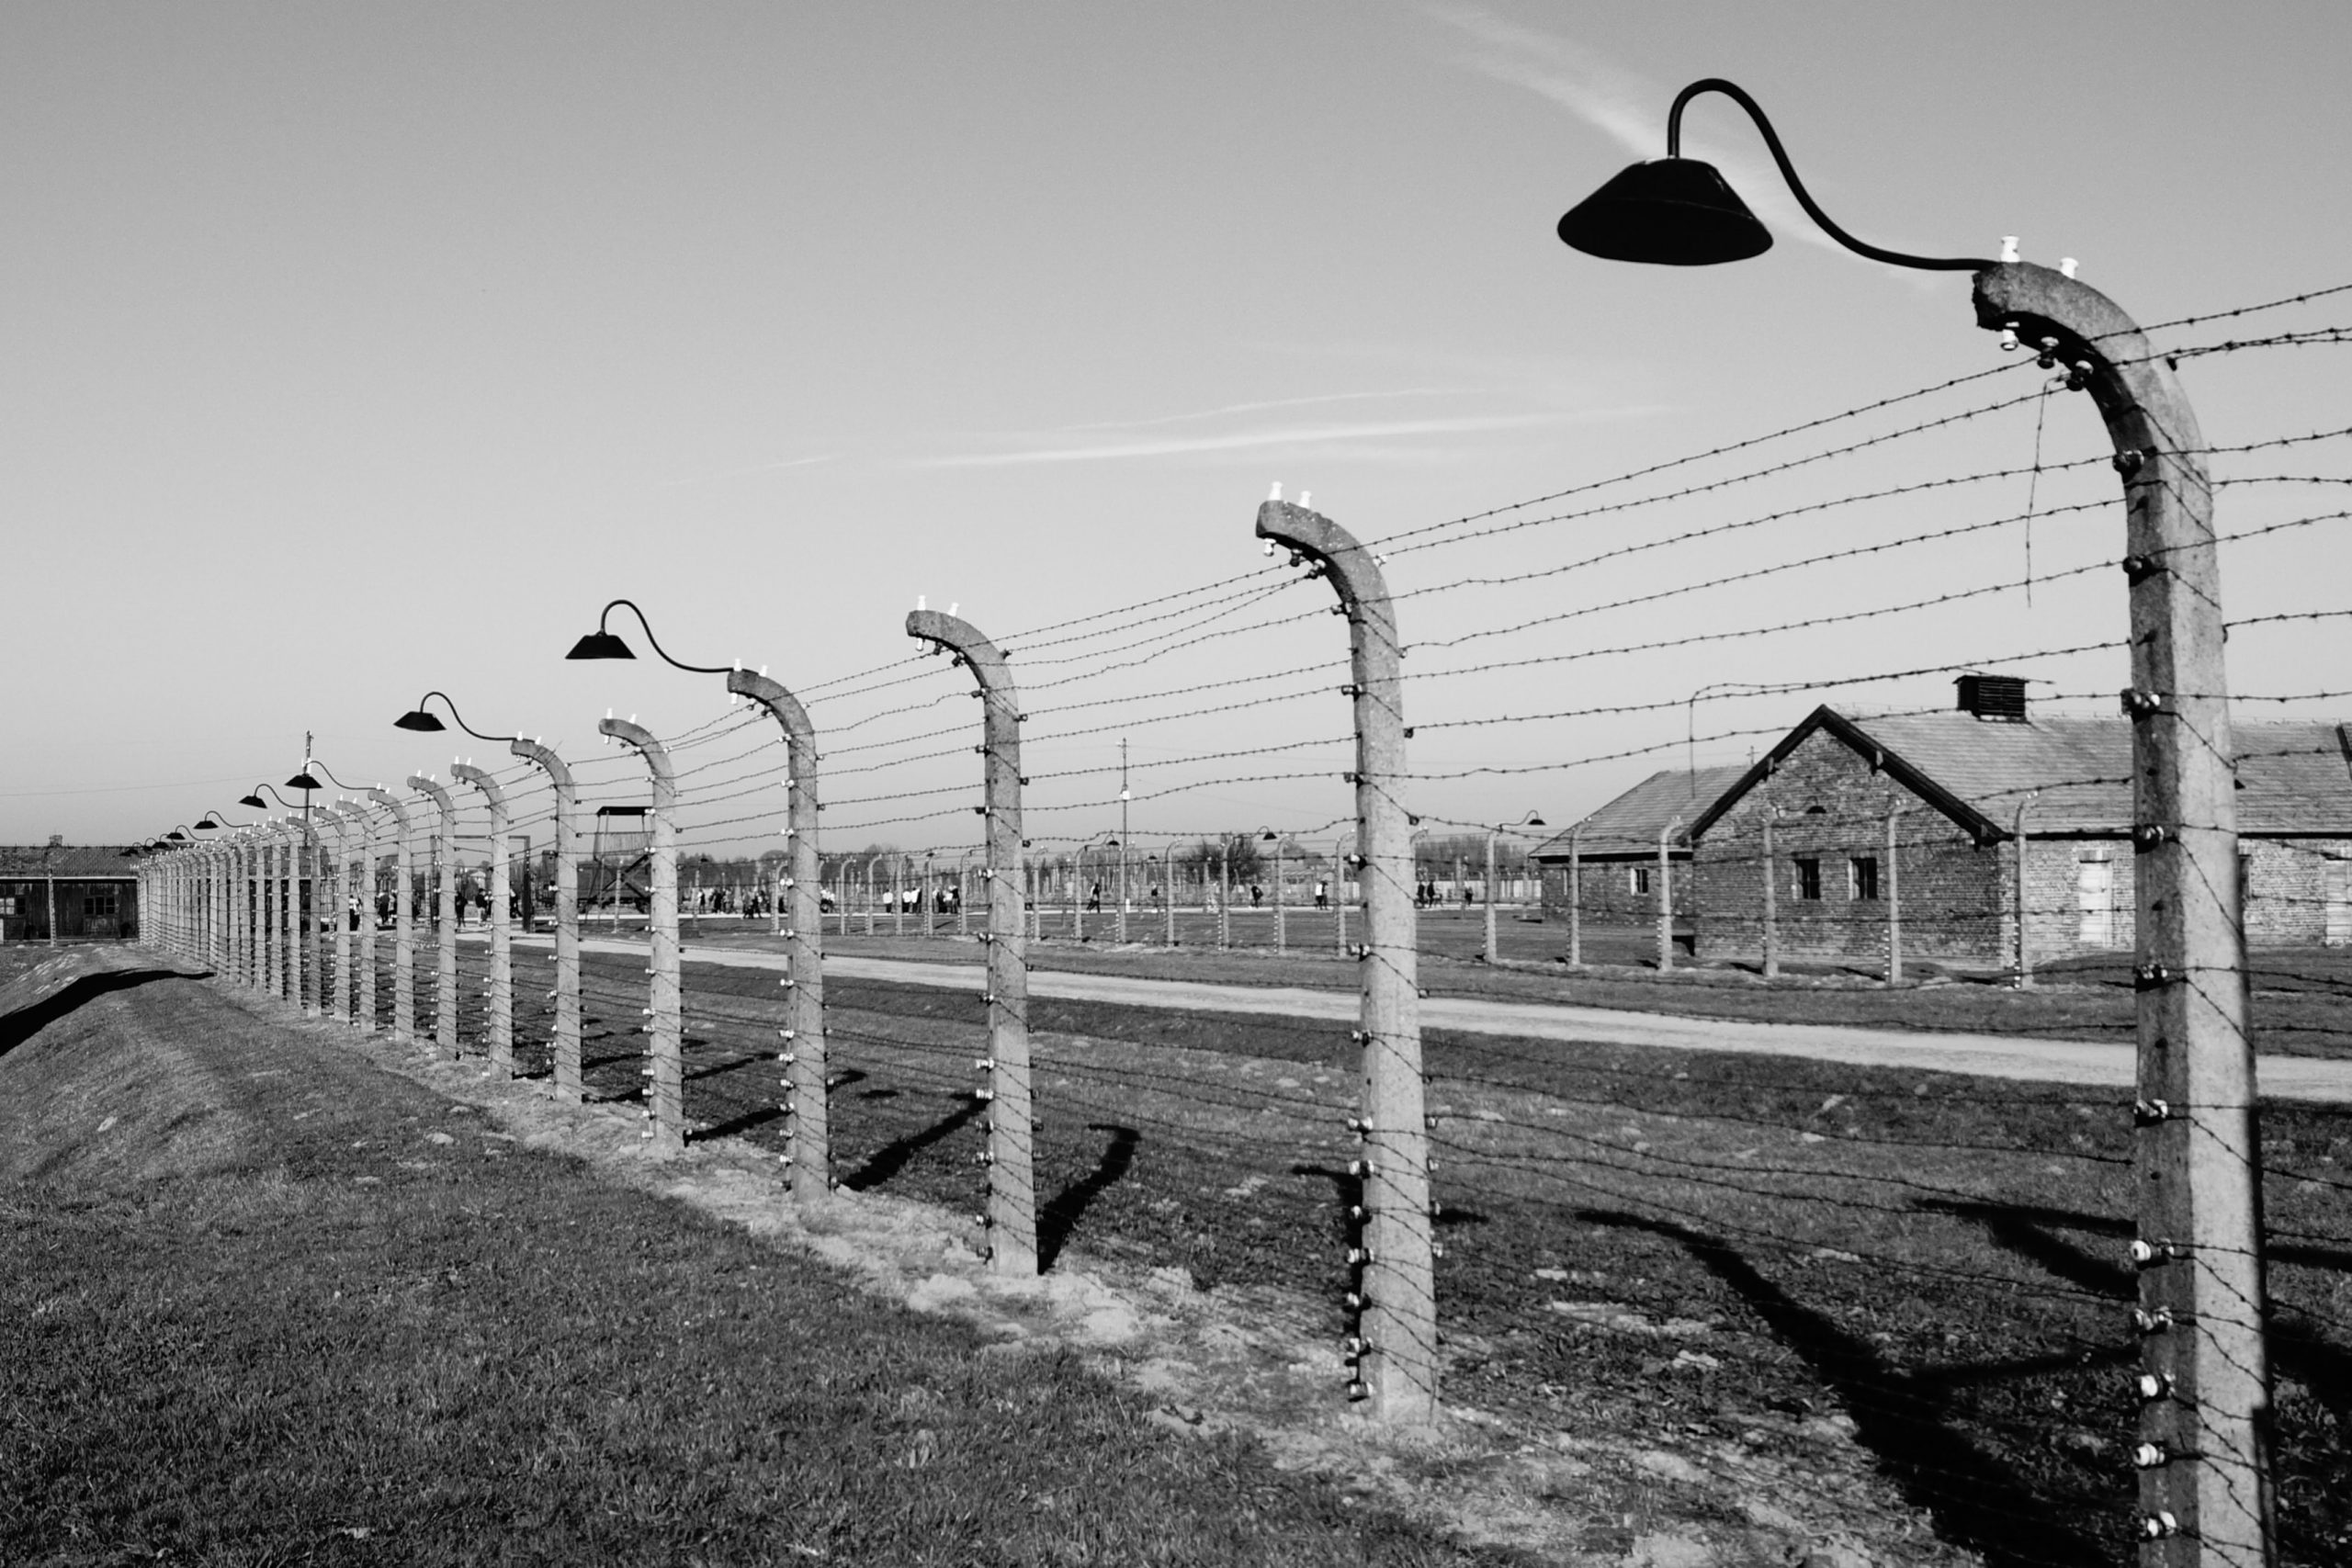 The gate into Auschwitz